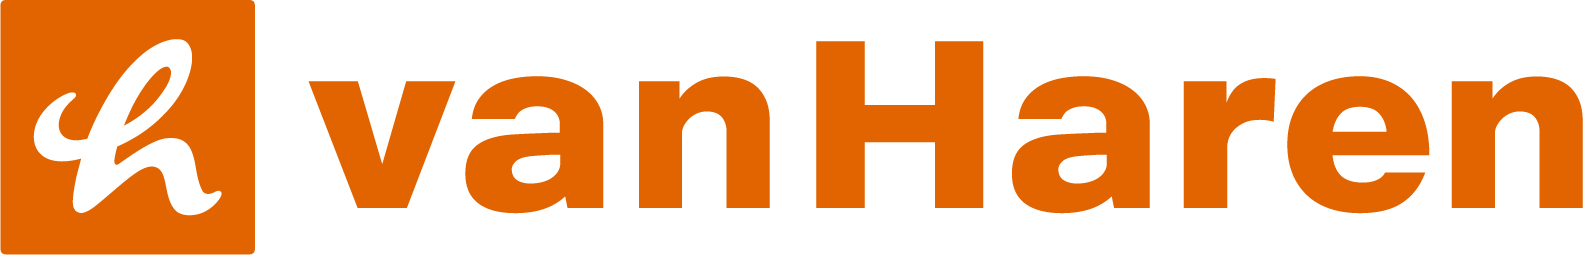 VHS-webshop-logo-h6-v1